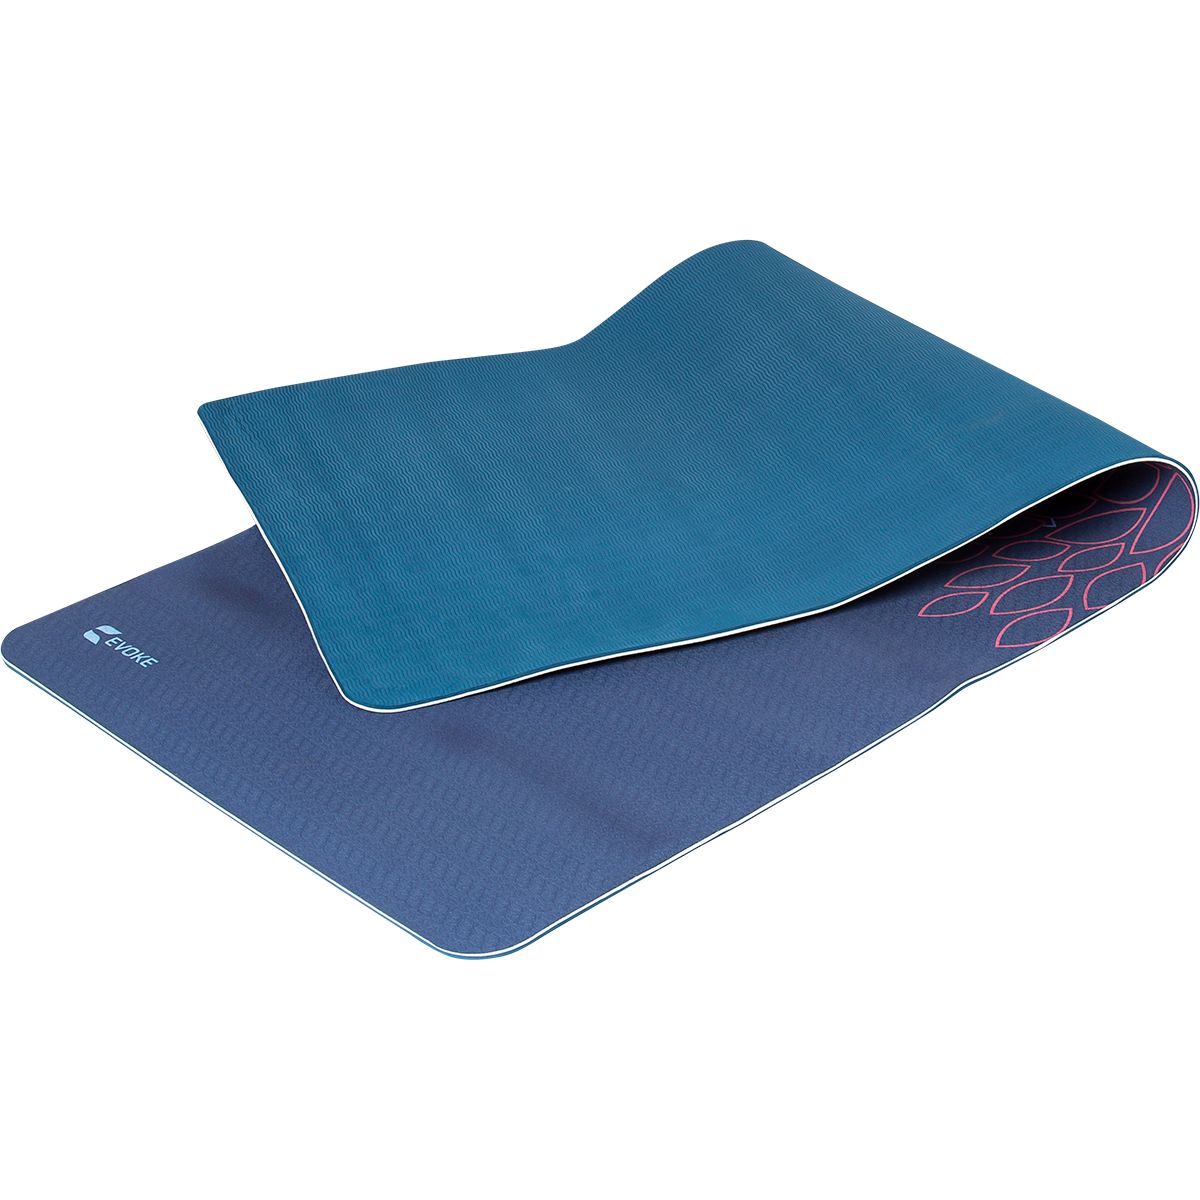 Evoke Printed Leaves 5mm Yoga Mat